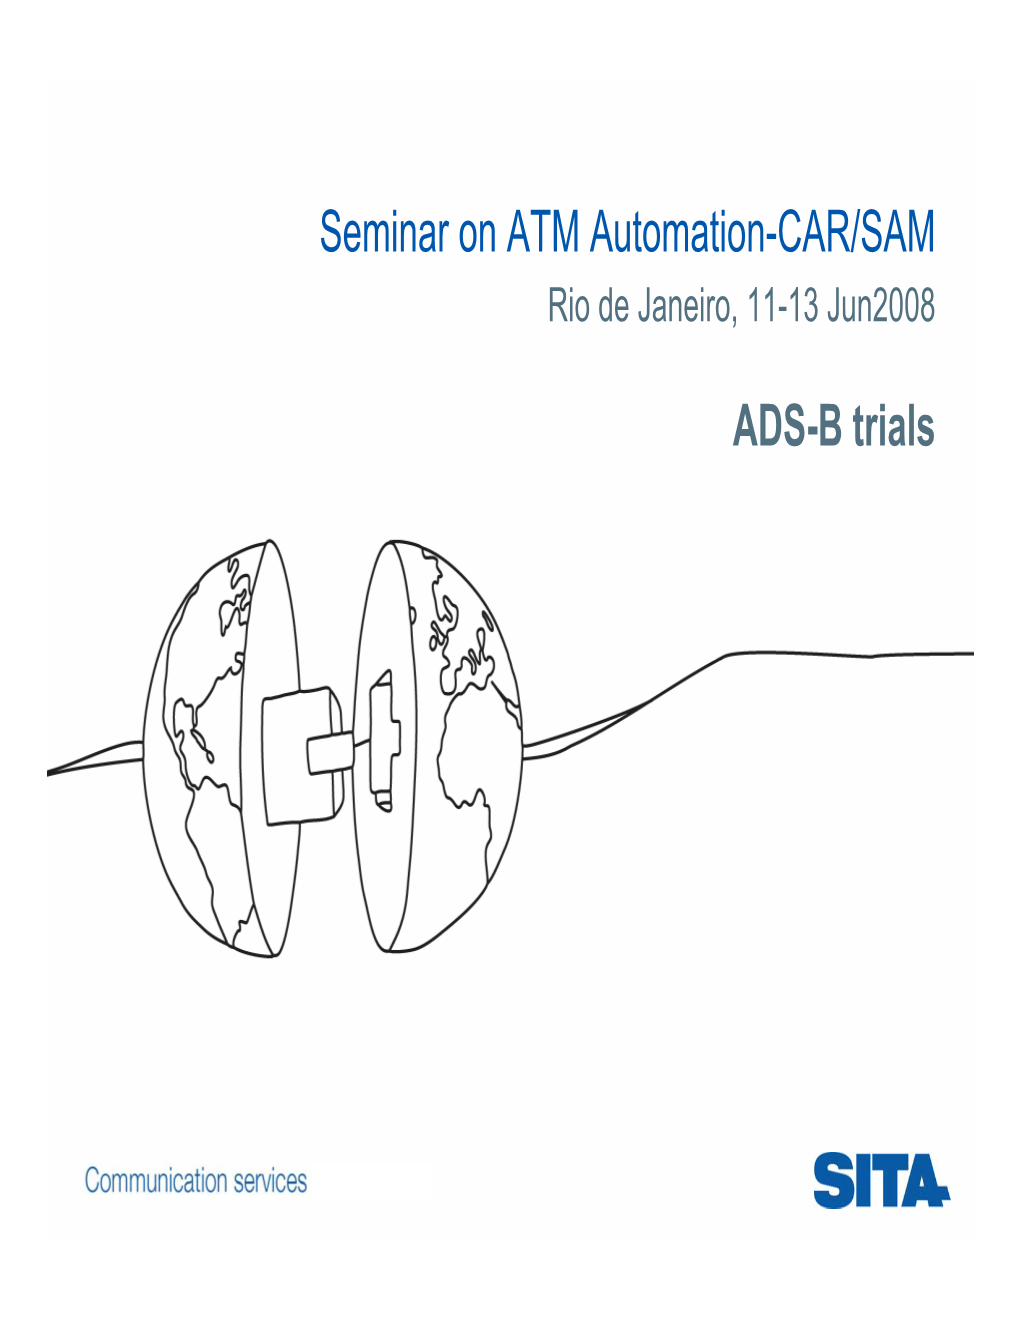 ADS-B Trials Seminar on ATM Automation-CAR/SAM